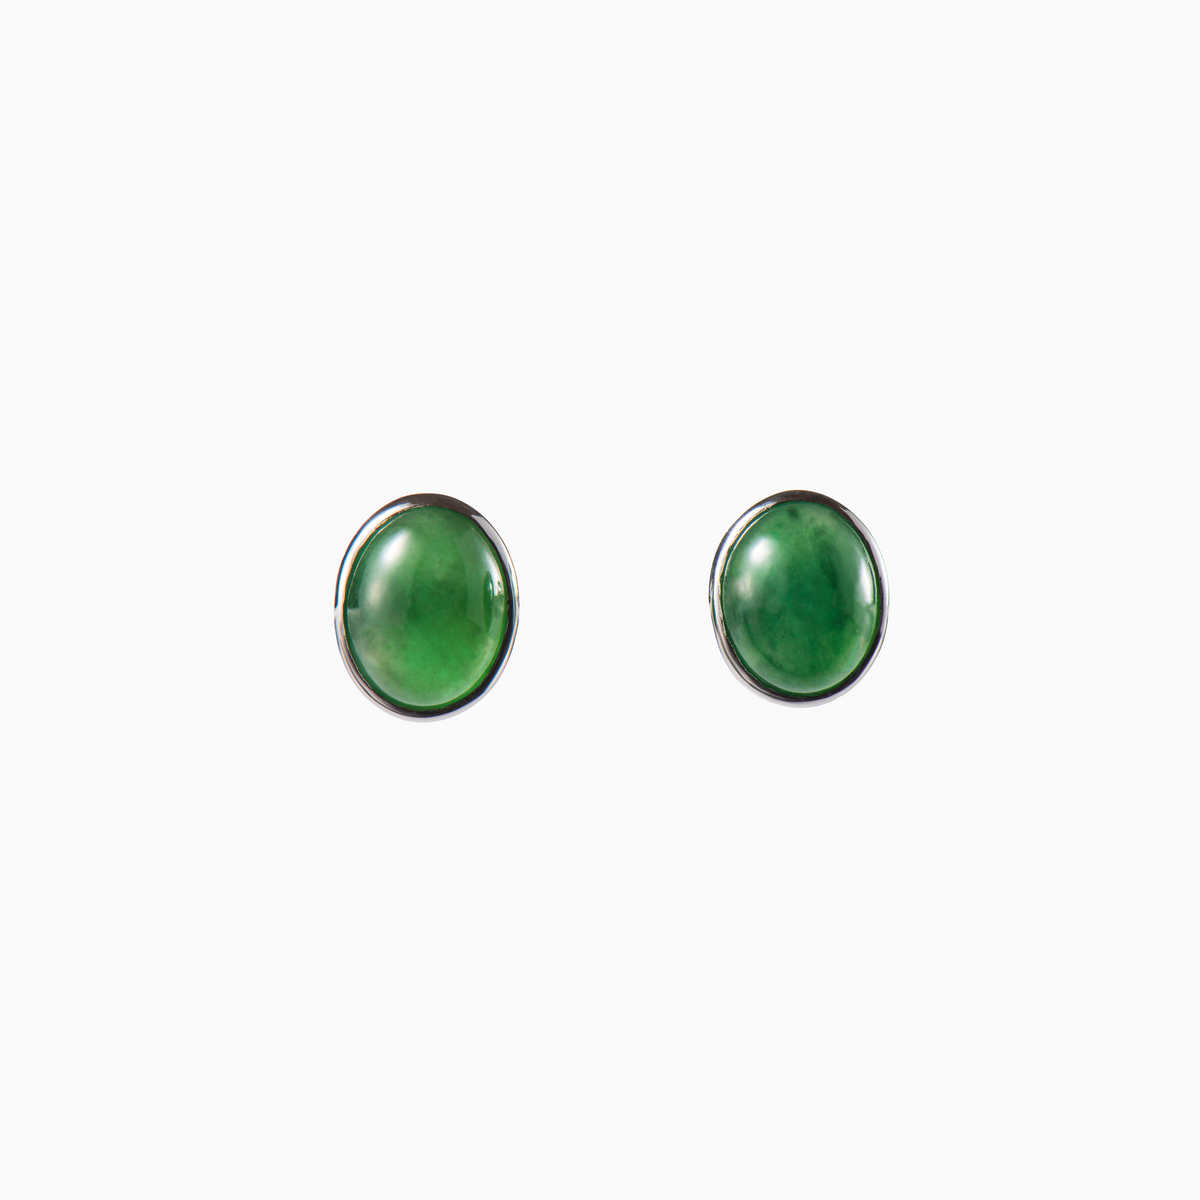 Green Cabochon Jade Earrings